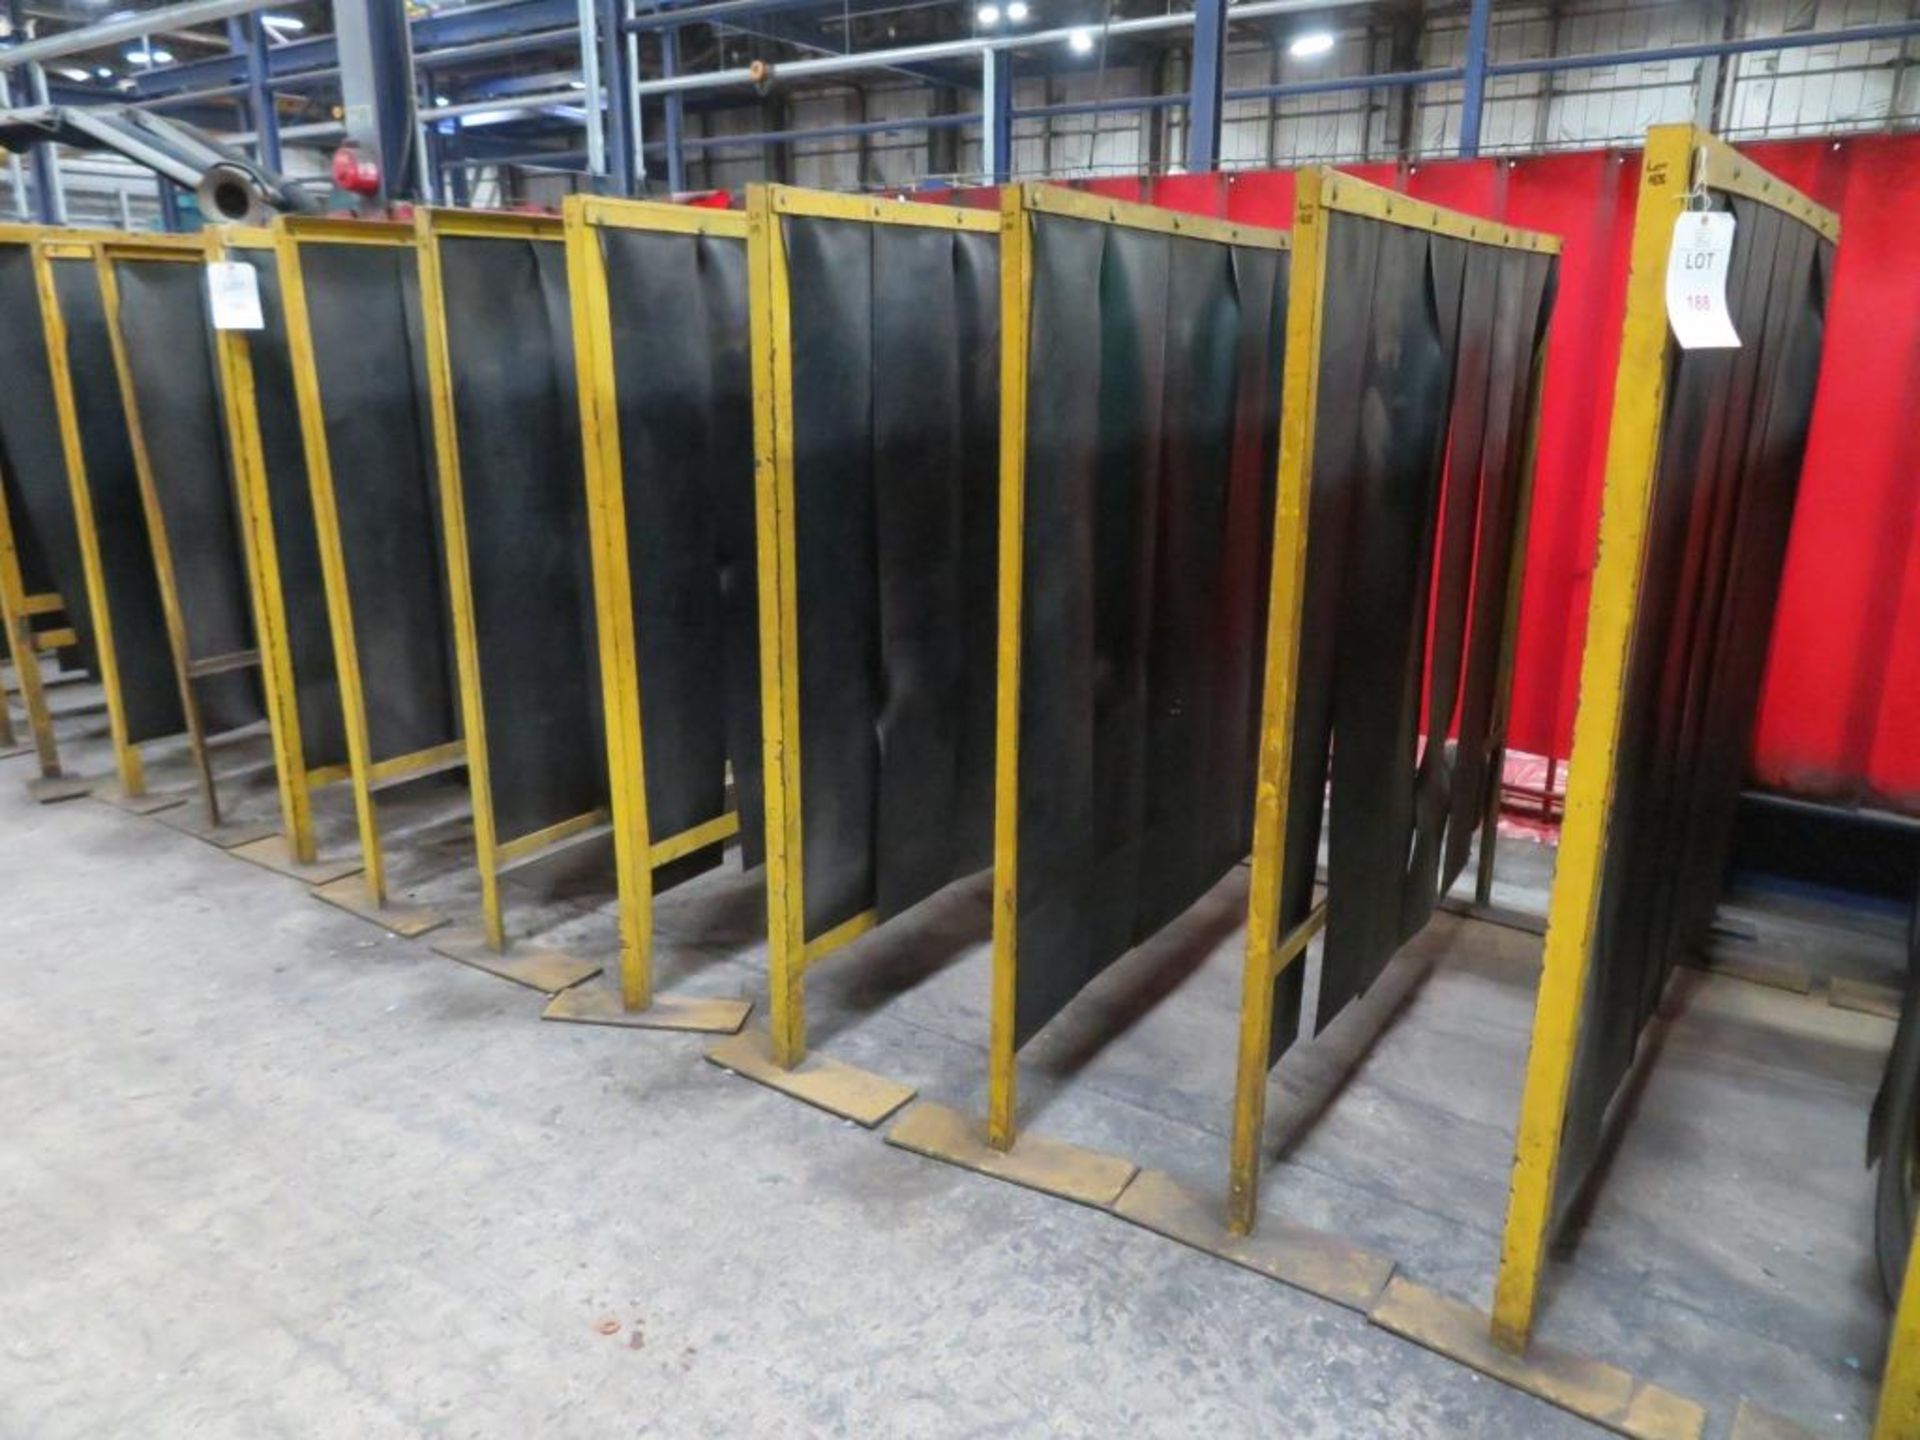 Seven welding screens